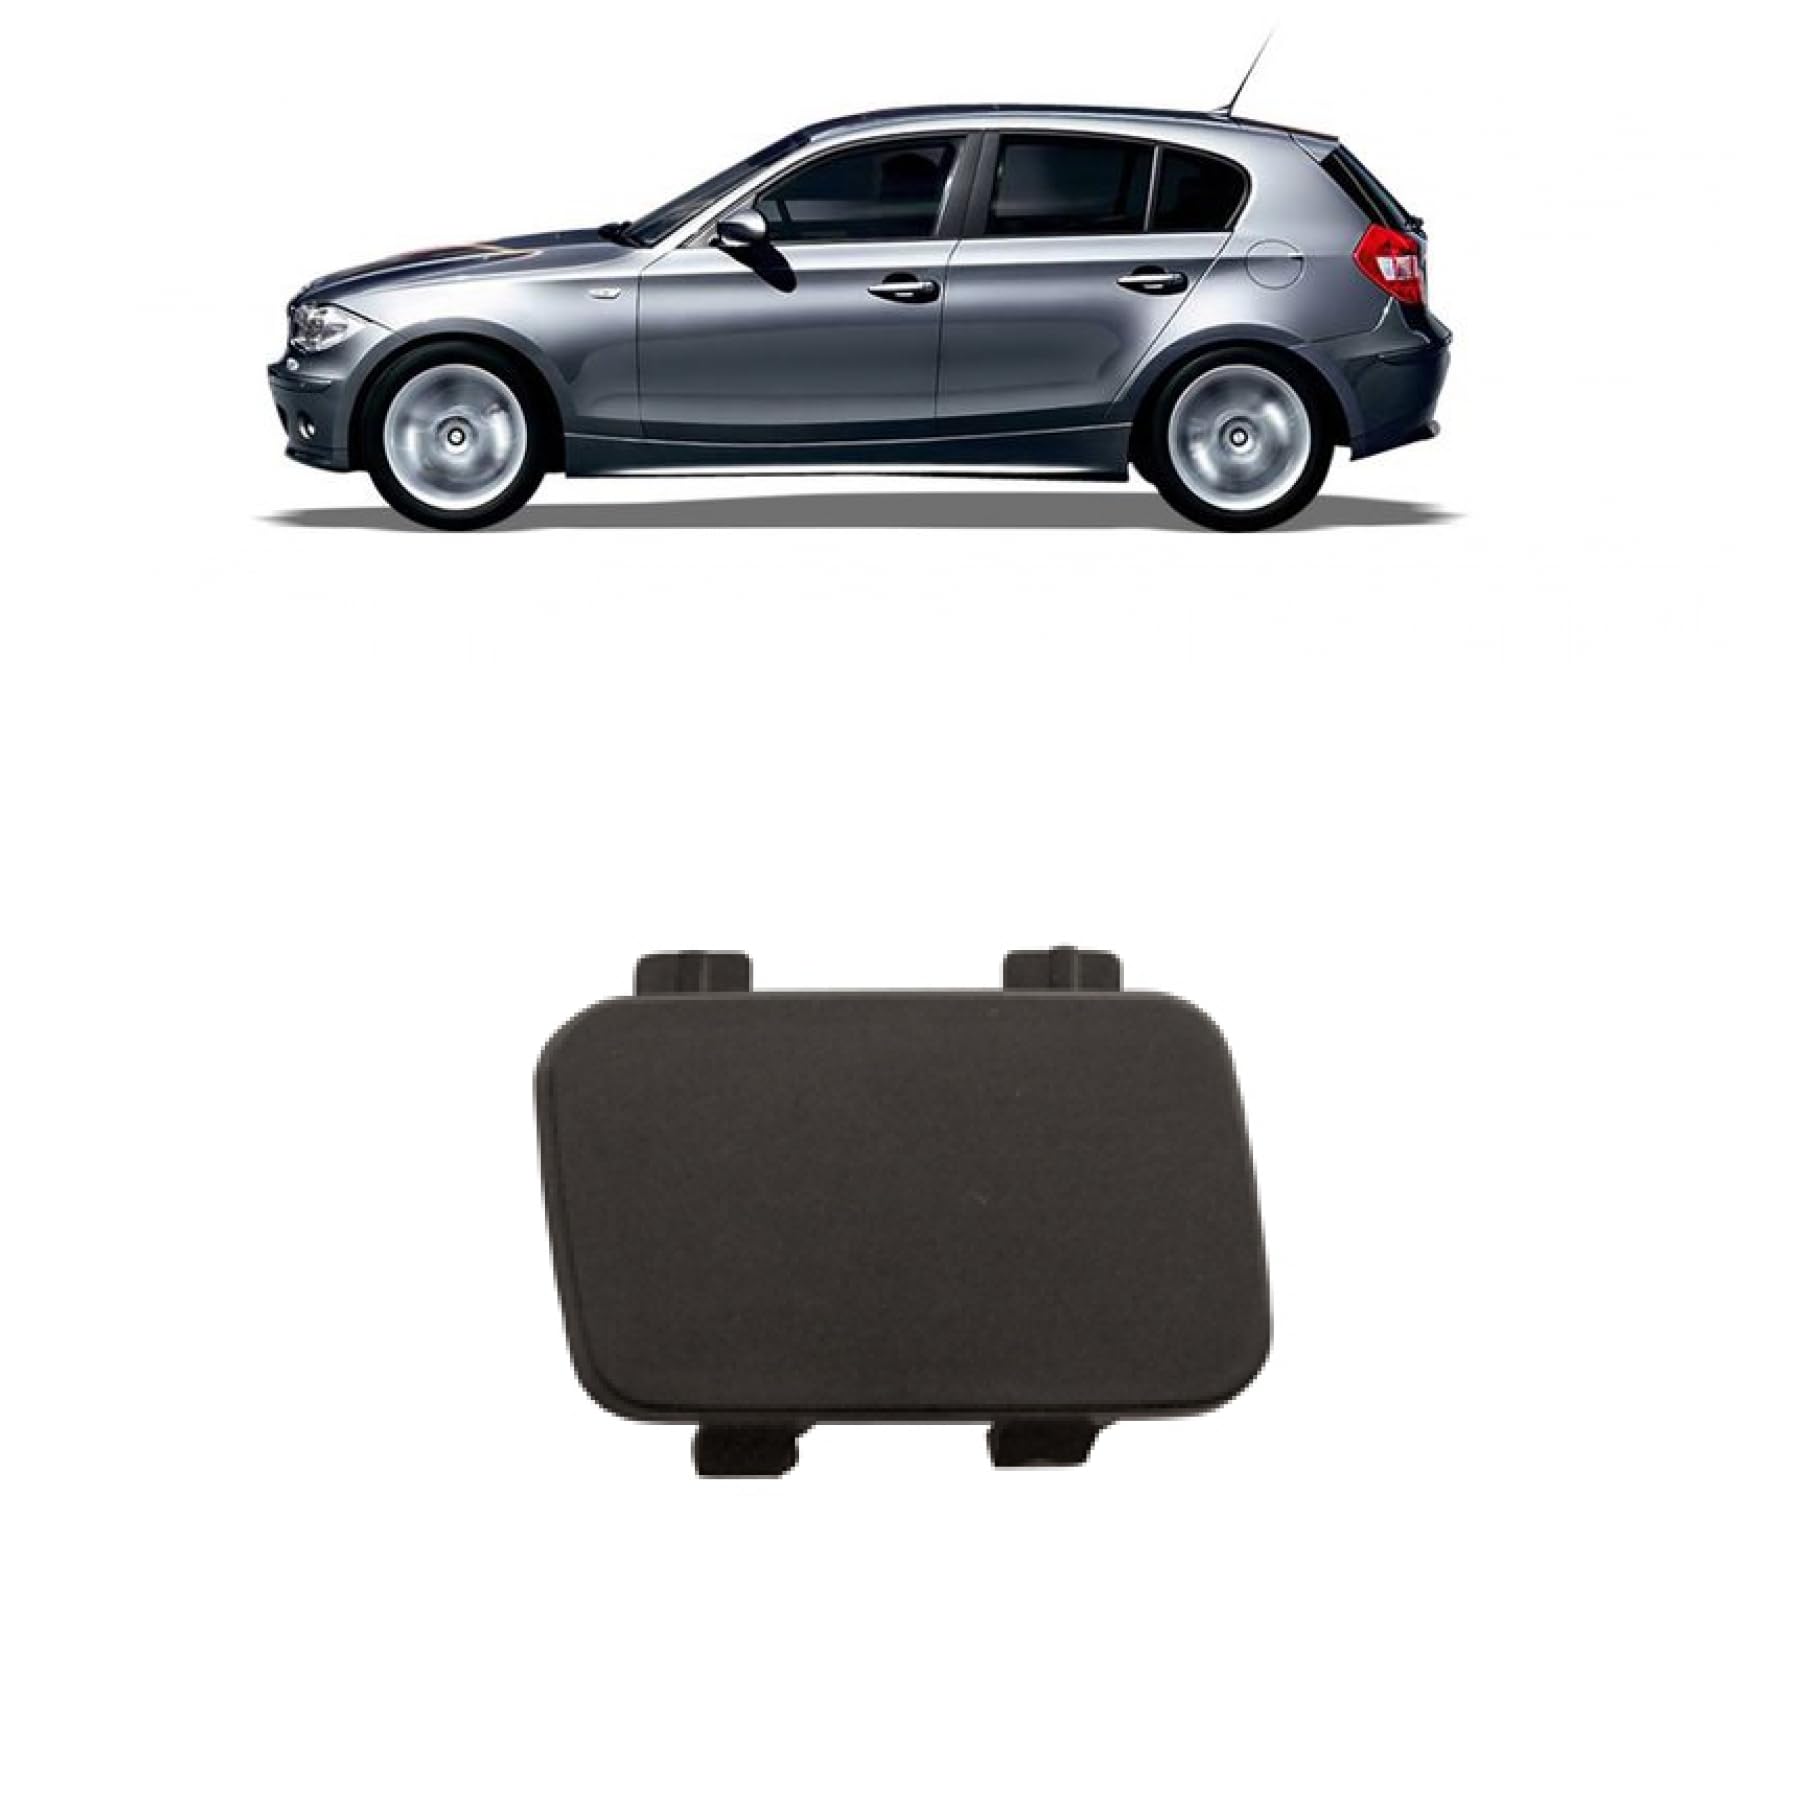 DM Autoteile Abschlepphaken Abdeckung Zughaken Stoßstange vorne kompatibel für BMW 1er E87 07-11 von DM Autoteile